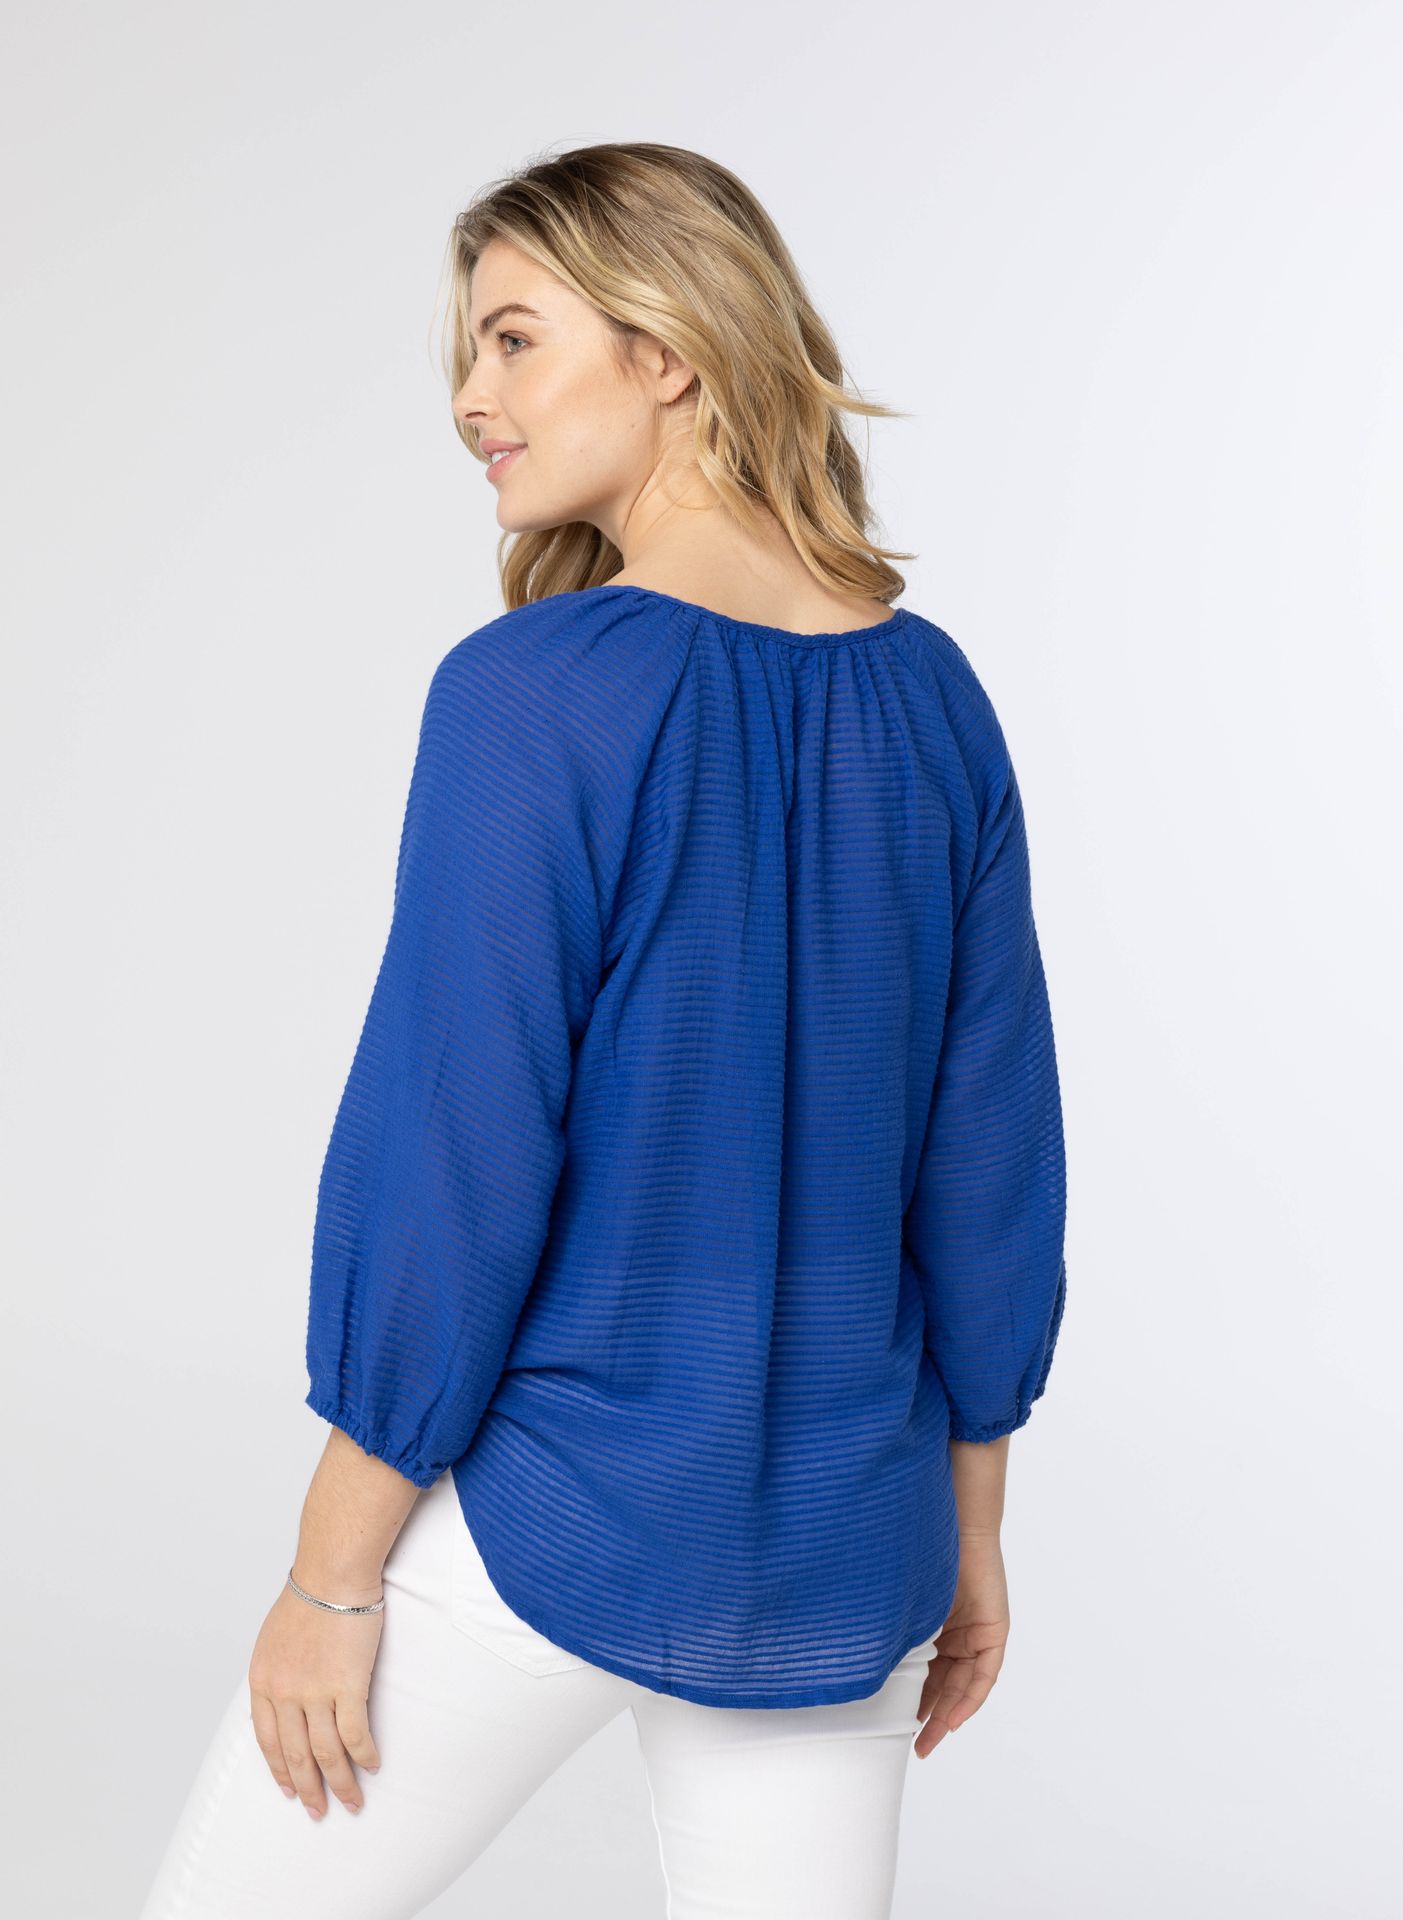 Norah Kobaltblauwe blouse cobalt 213874-468